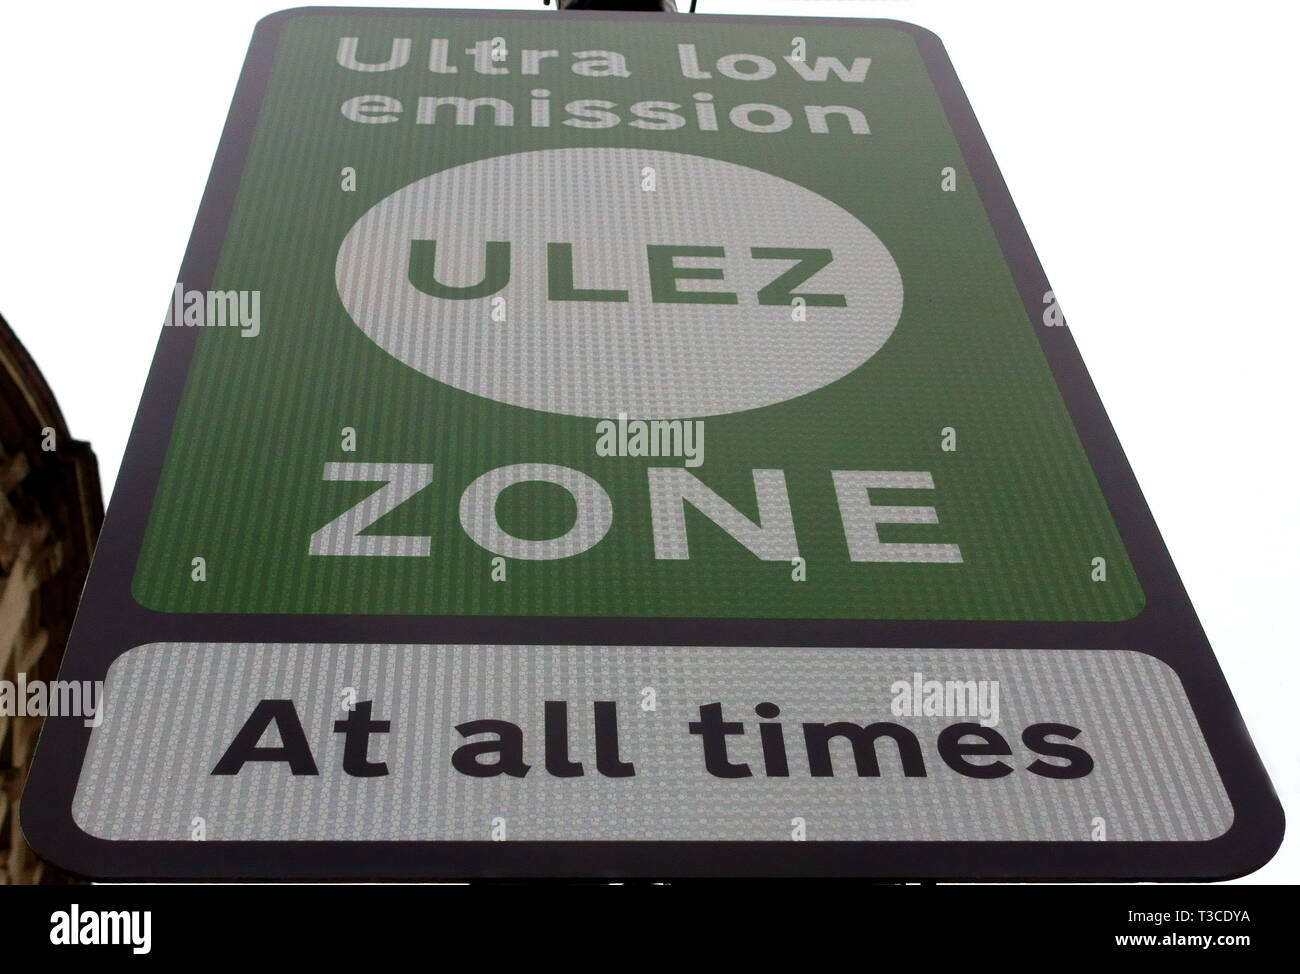 Ultra zona de baja emisión (ULEZ) entró en vigor en la zona de peaje urbano de Londres el 8 de abril de 2019 Foto de stock